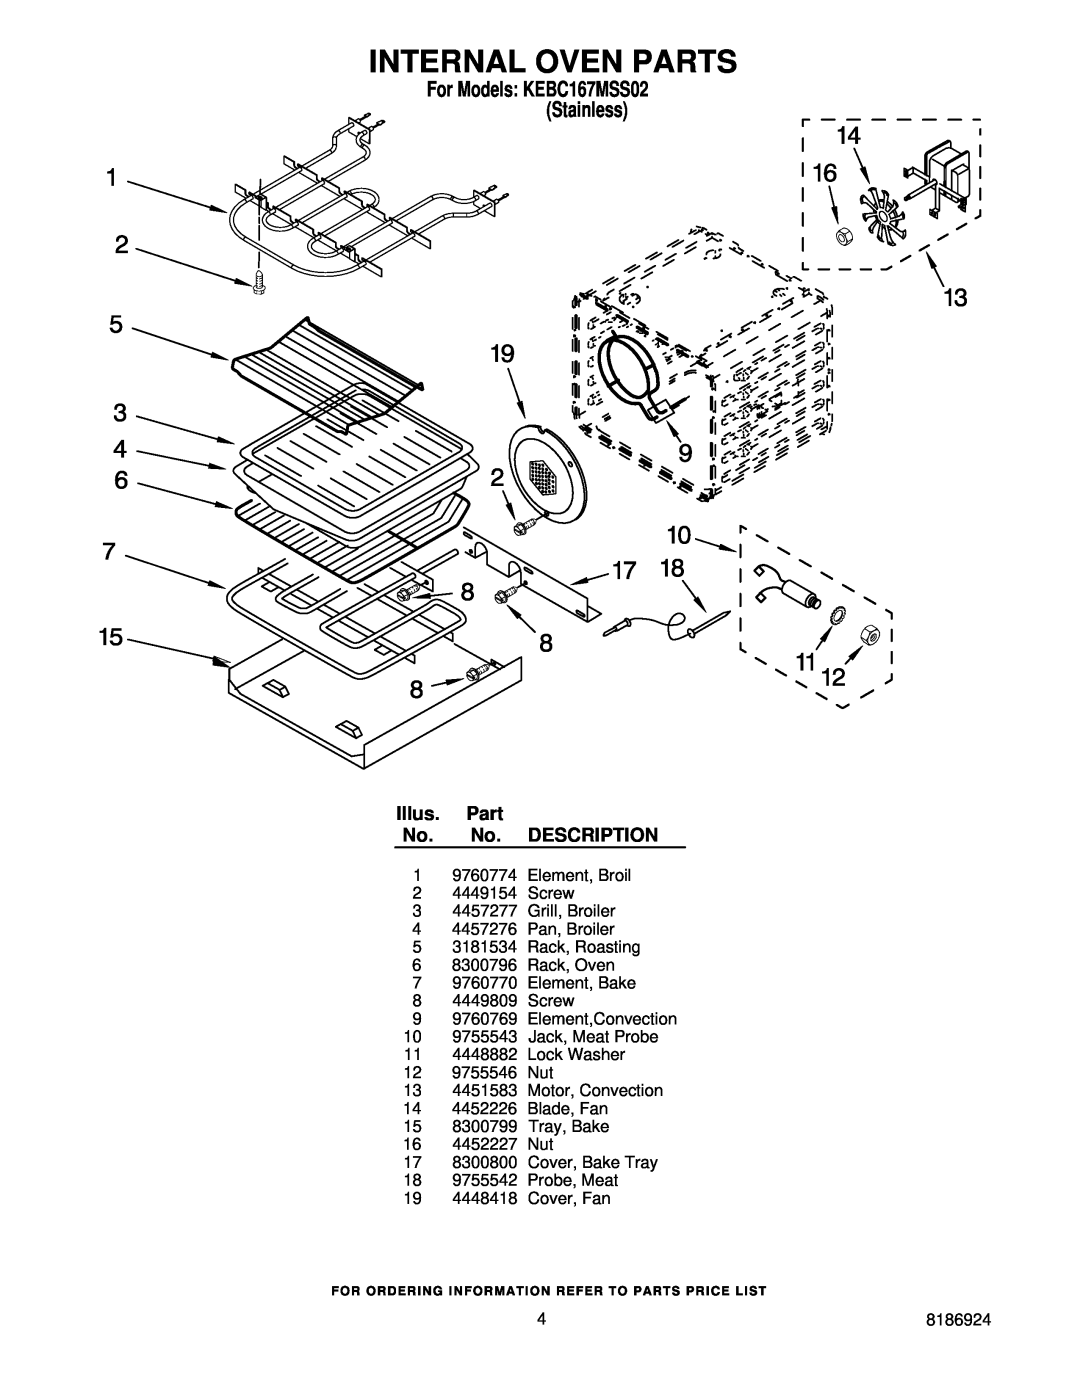 KitchenAid KEBC167MSS02 manual Internal Oven Parts, Illus. Part No. No. DESCRIPTION 